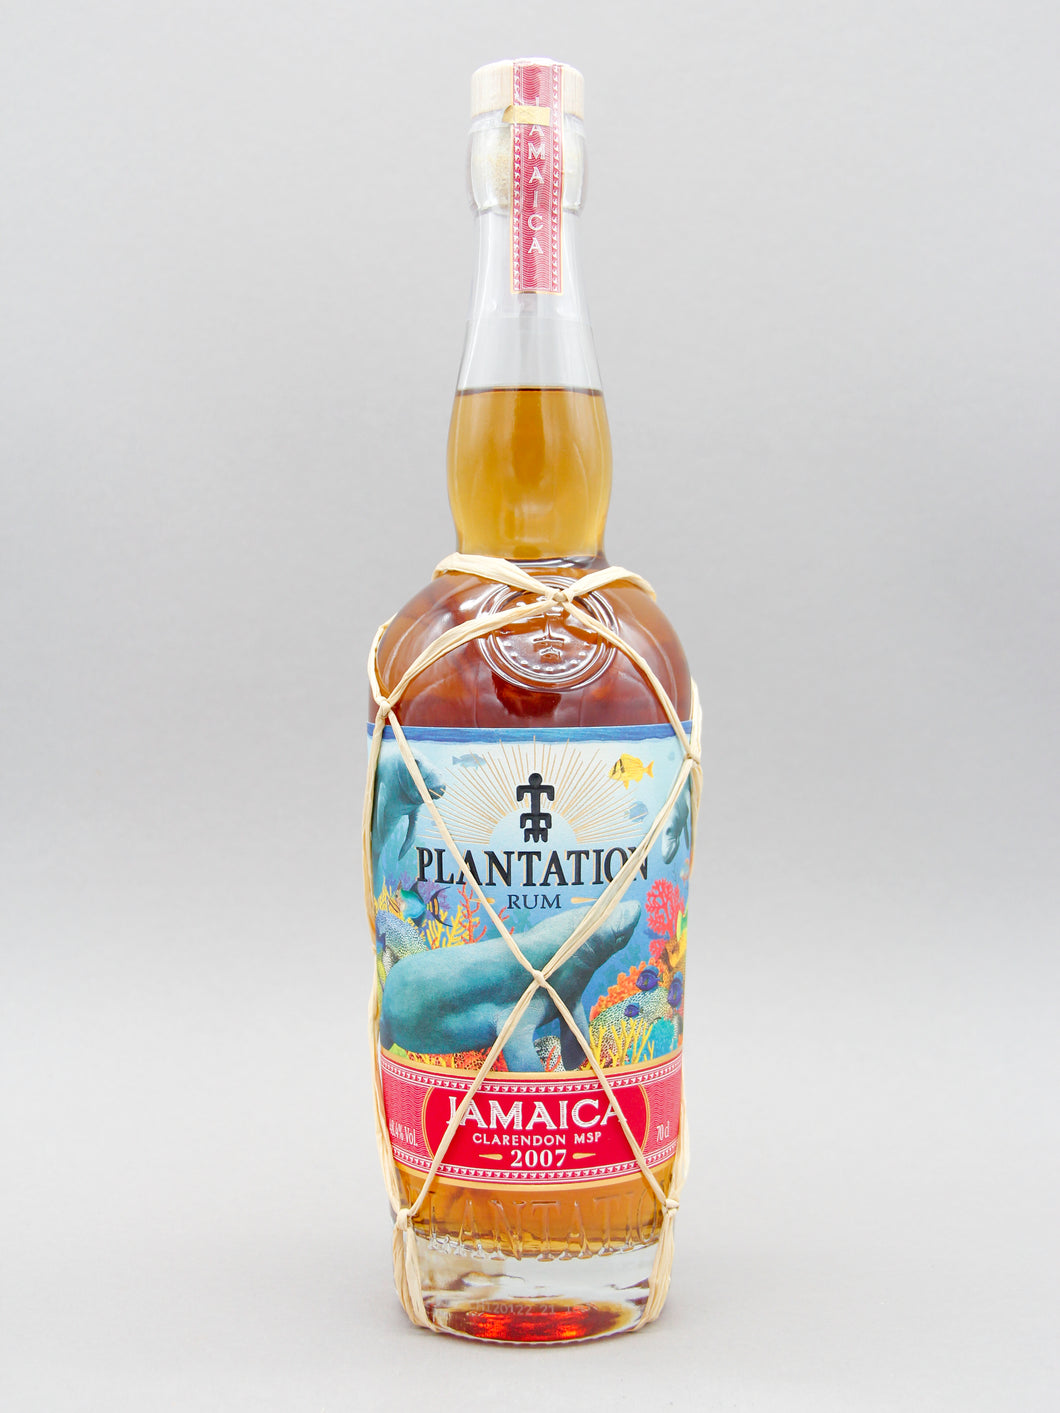 Plantation Jamaica Rum, Vintage Edition 2007 Clarendon MSP (48,4%, 70cl)